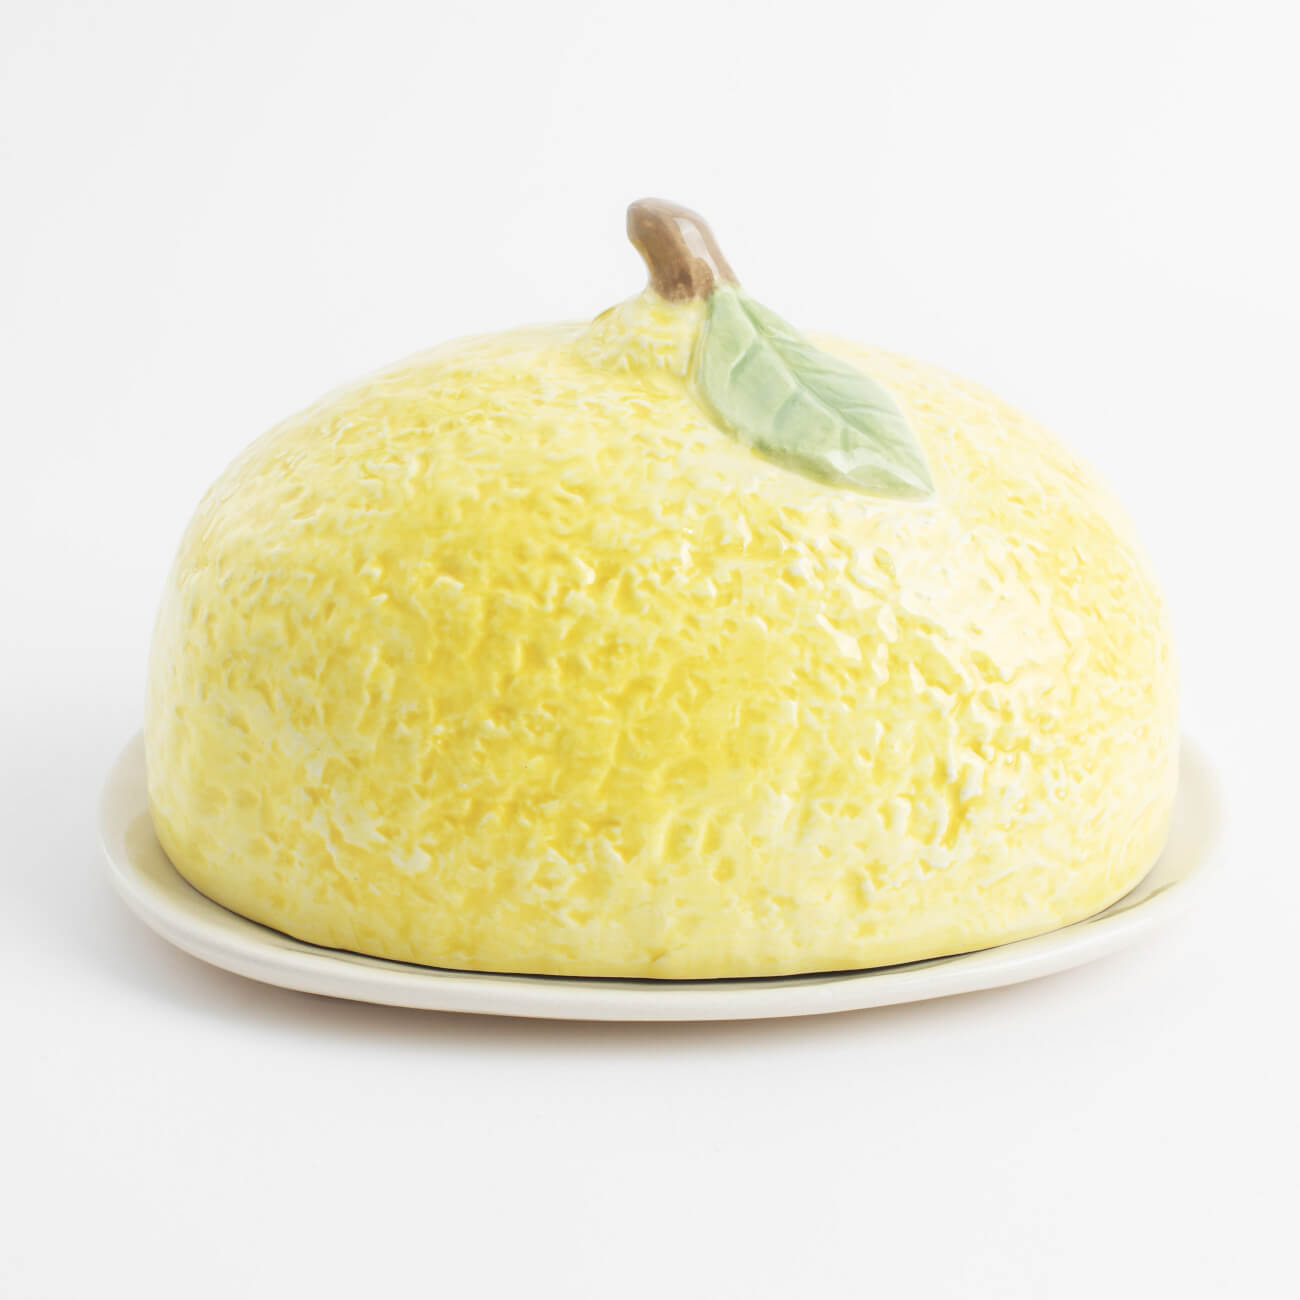 Масленка, 18 см, керамика, овальная, желтая, Лимон, Sicily in bloom масленка t